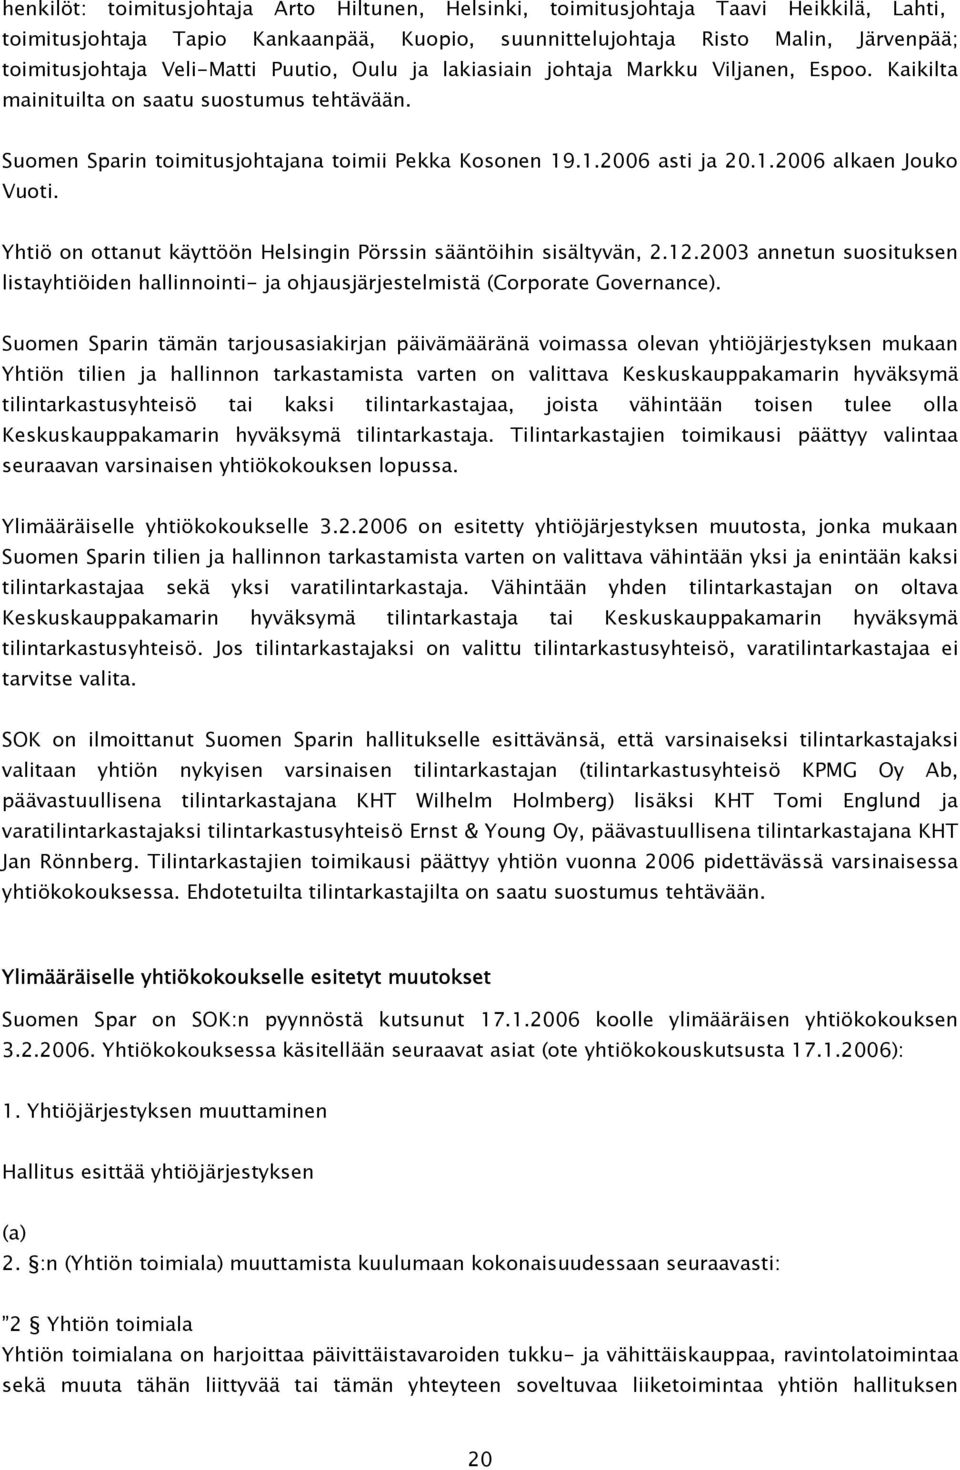 Yhtiö on ottanut käyttöön Helsingin Pörssin sääntöihin sisältyvän, 2.12.2003 annetun suosituksen listayhtiöiden hallinnointi- ja ohjausjärjestelmistä (Corporate Governance).